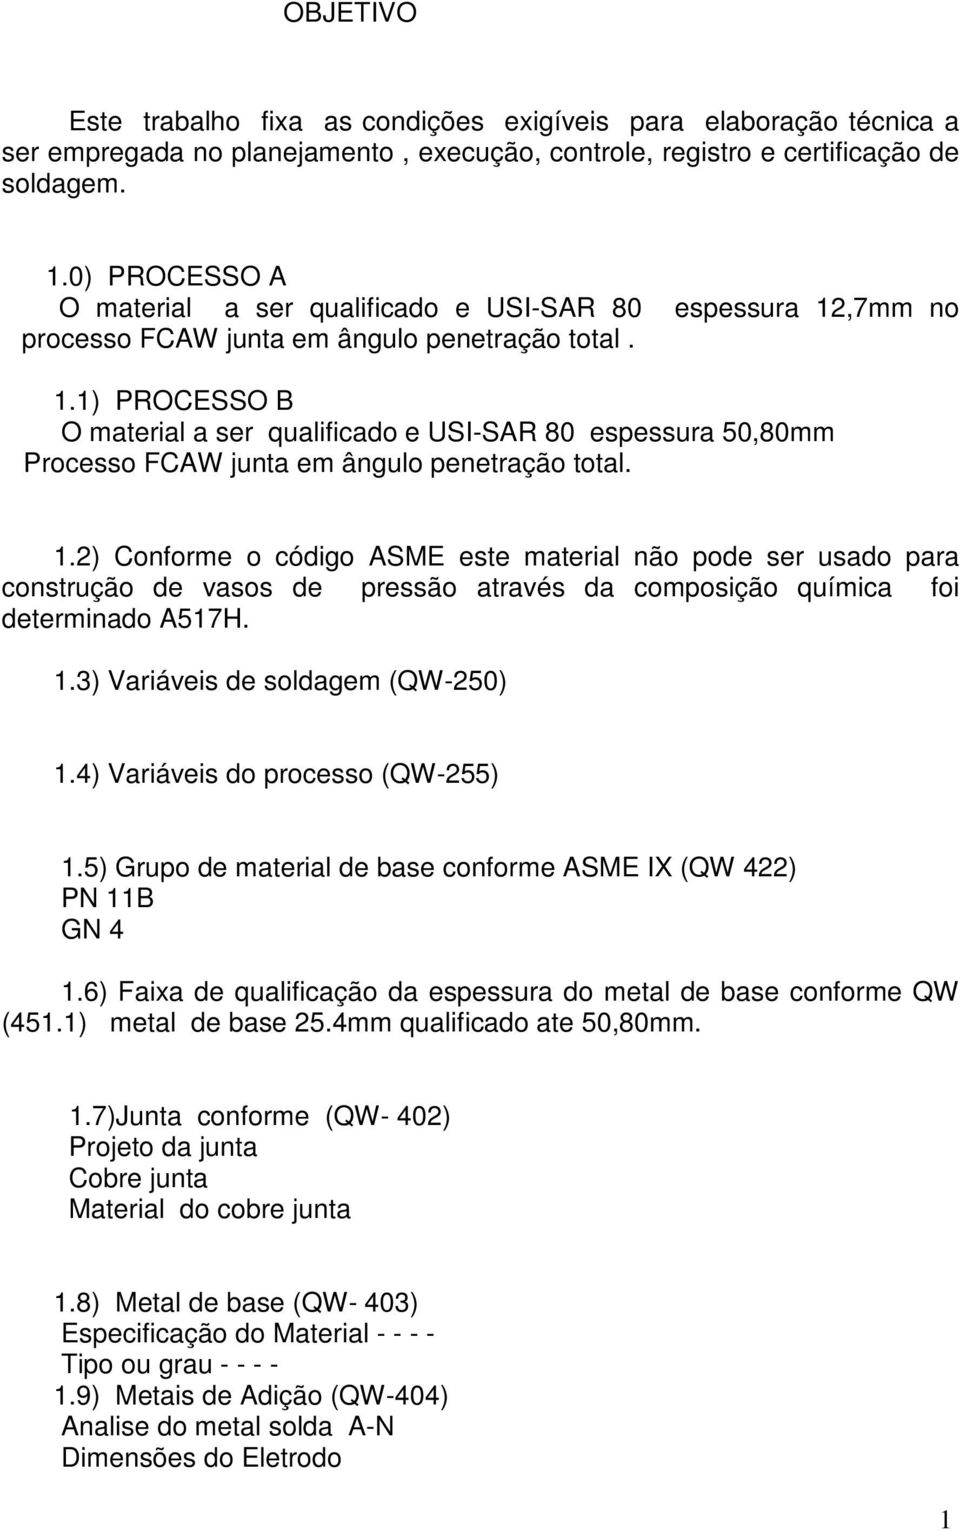 1.2) Conforme o código ASME este material não pode ser usado para construção de vasos de pressão através da composição química foi determinado A517H. 1.3) Variáveis de soldagem (QW-250) 1.